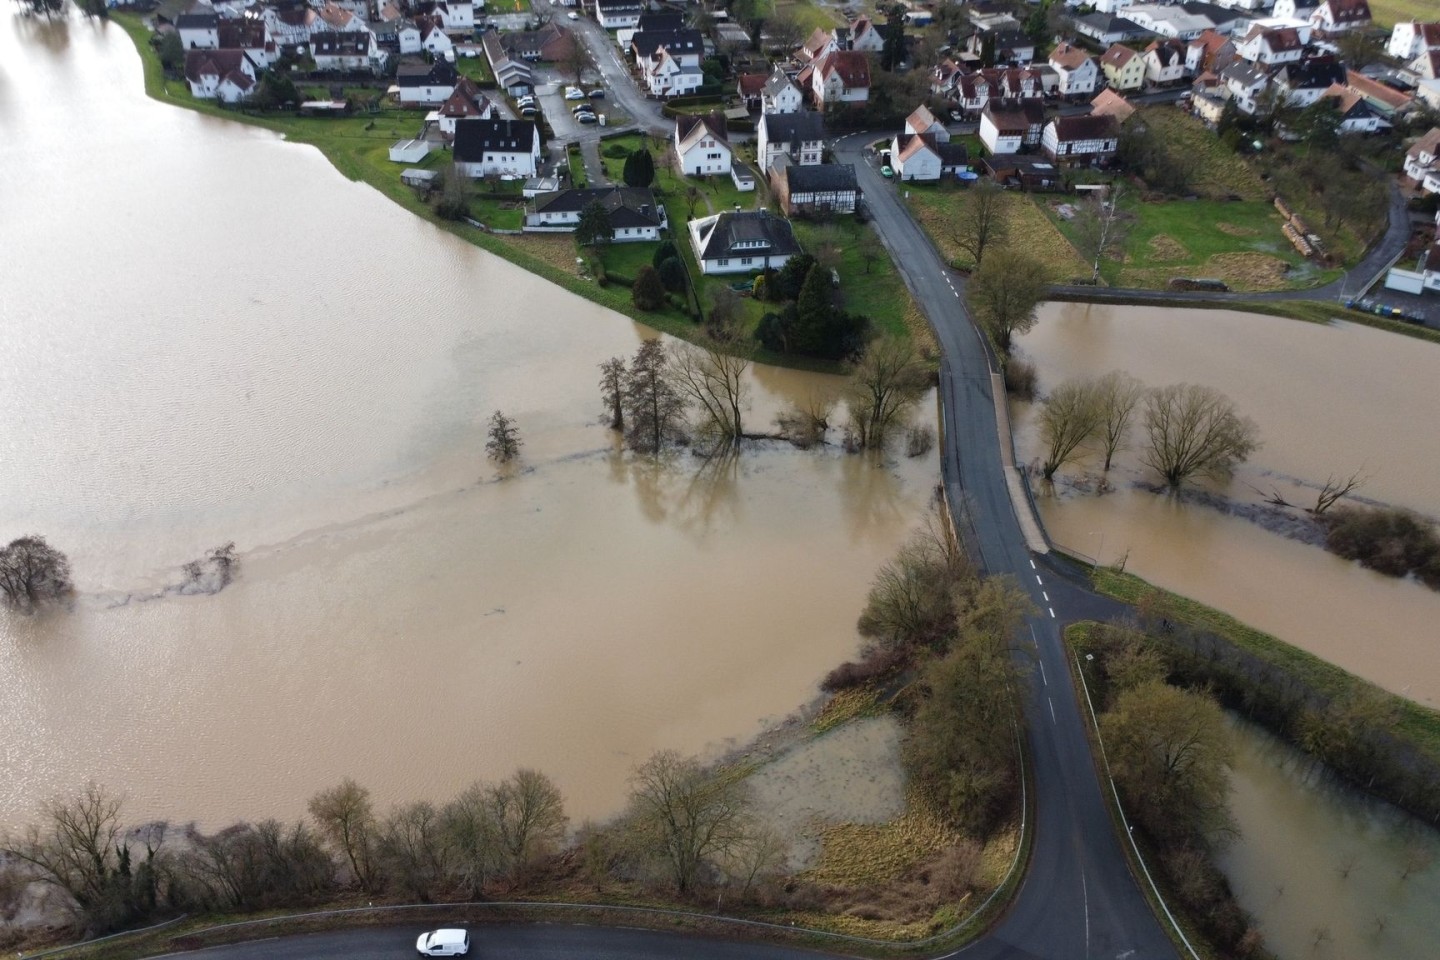 Hochwasser im Landkreis Marburg-Biedenkopf. Die Lahn ist weit über ihre Ufer getreten. Auch in Hessen ist die Hochwasserlage angespannt.